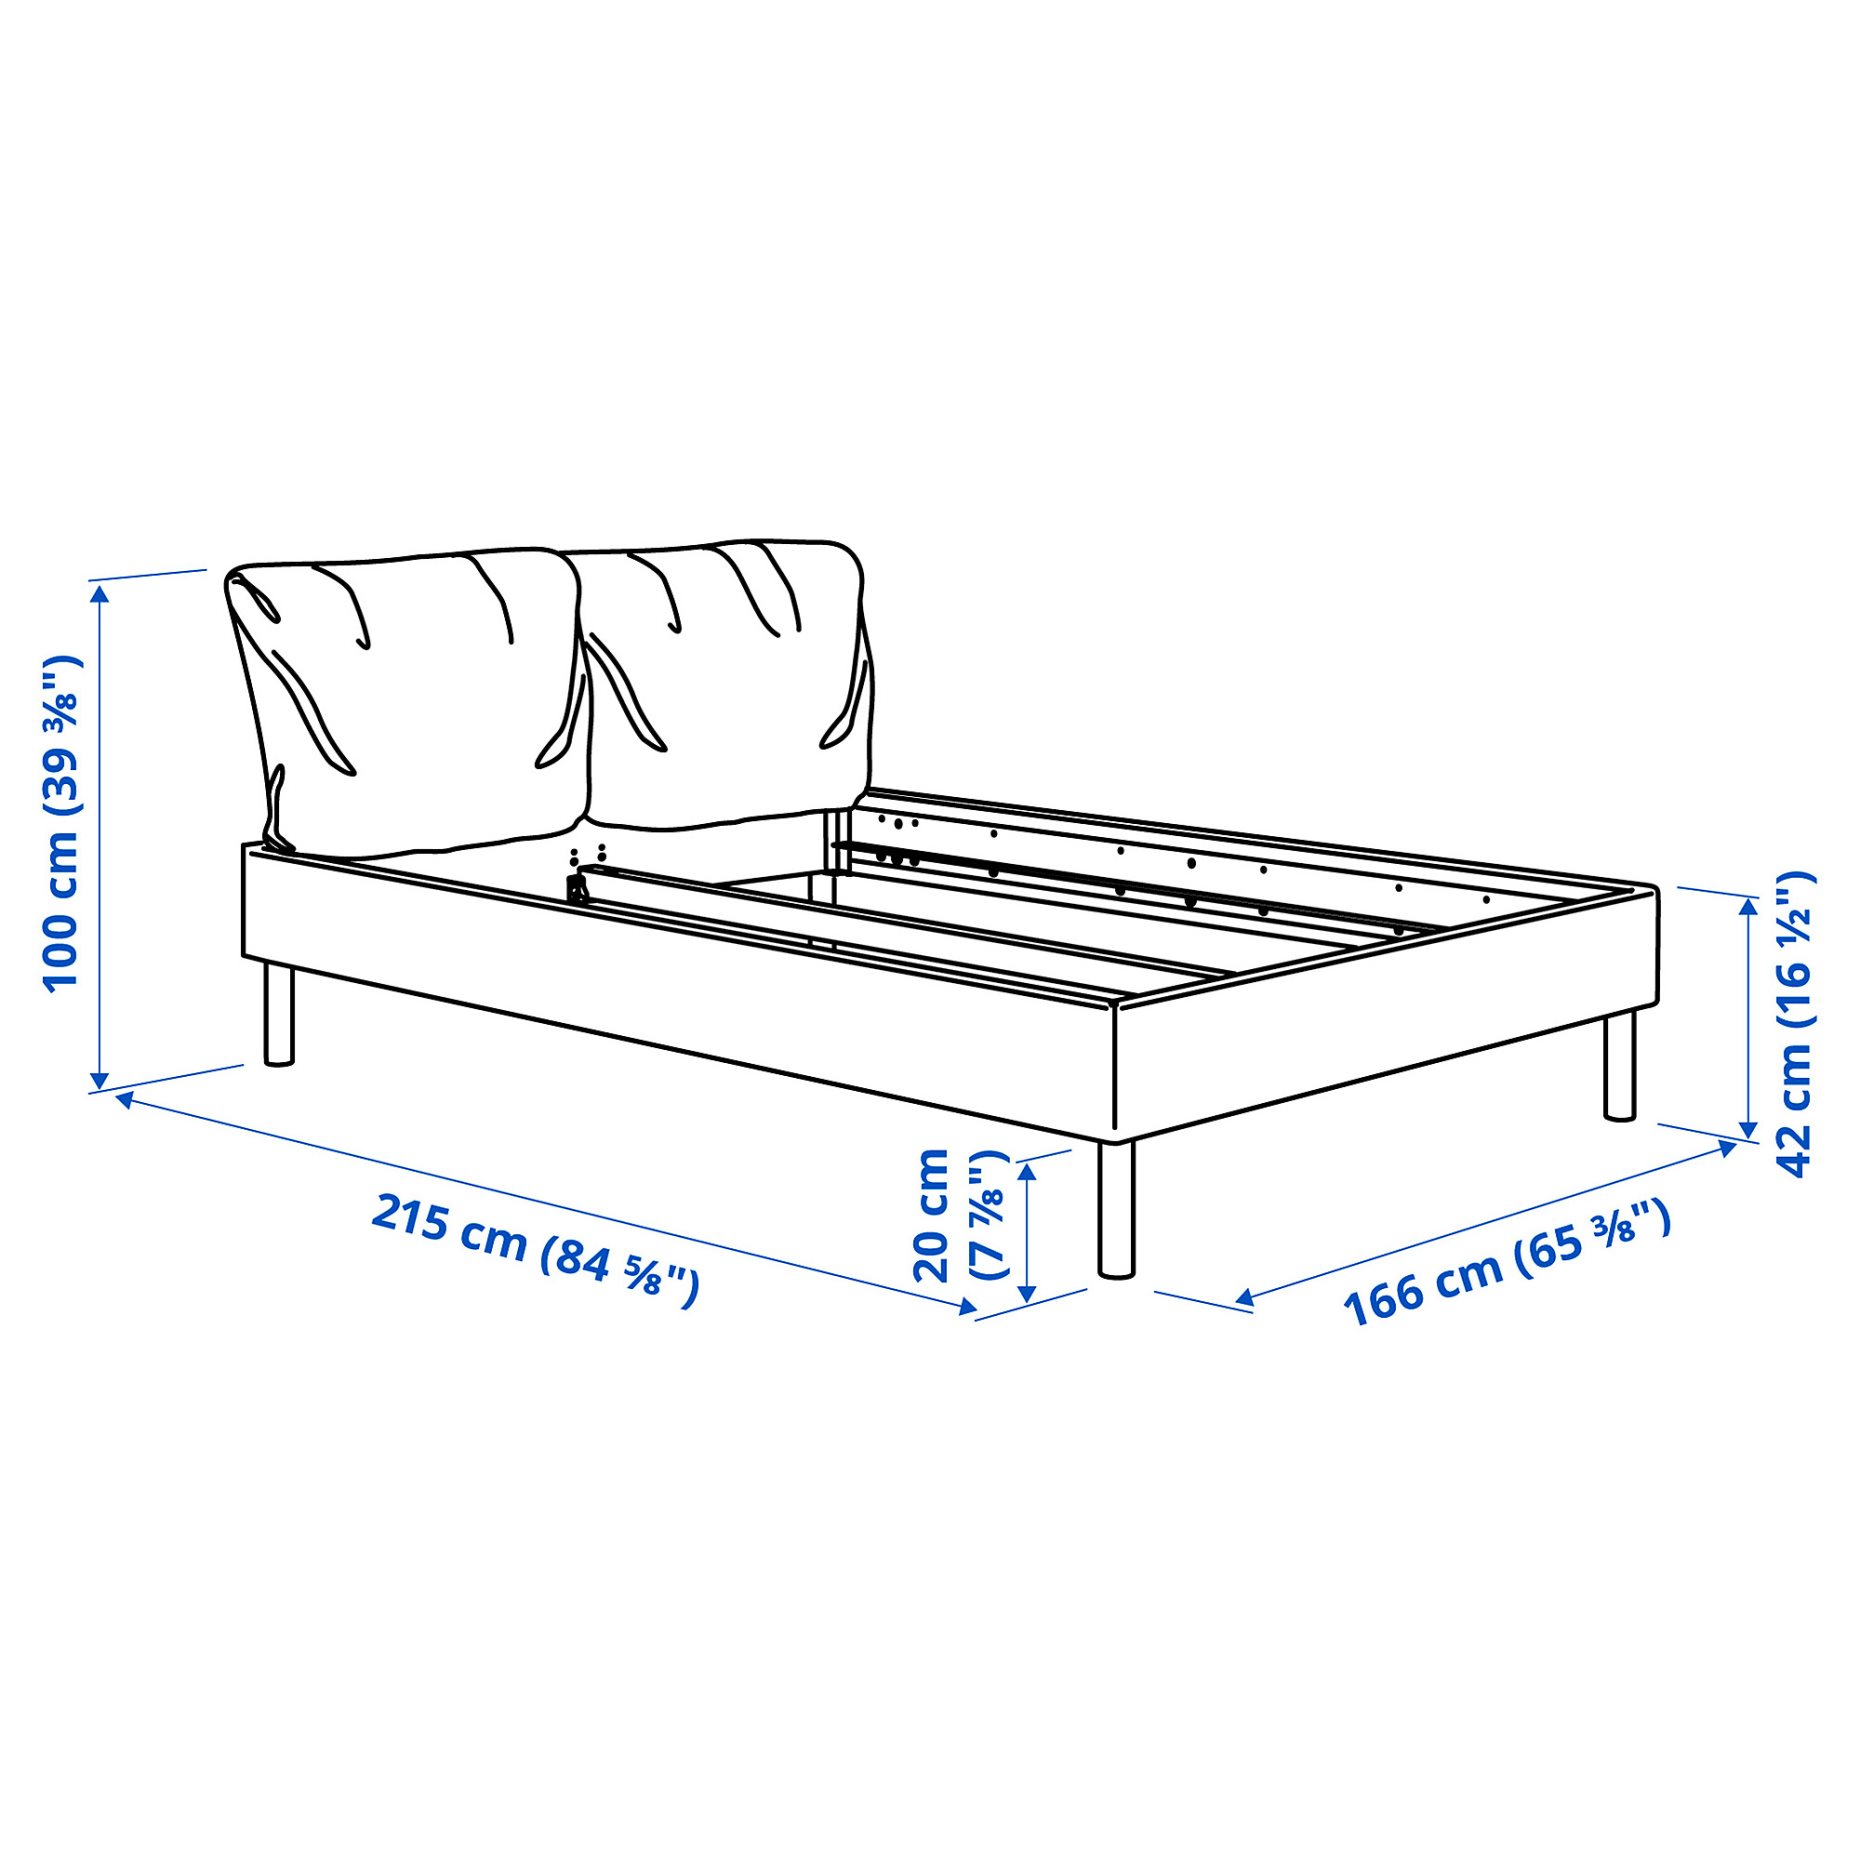 SAGESUND, upholstered bed frame, 160x200 cm, 005.593.71